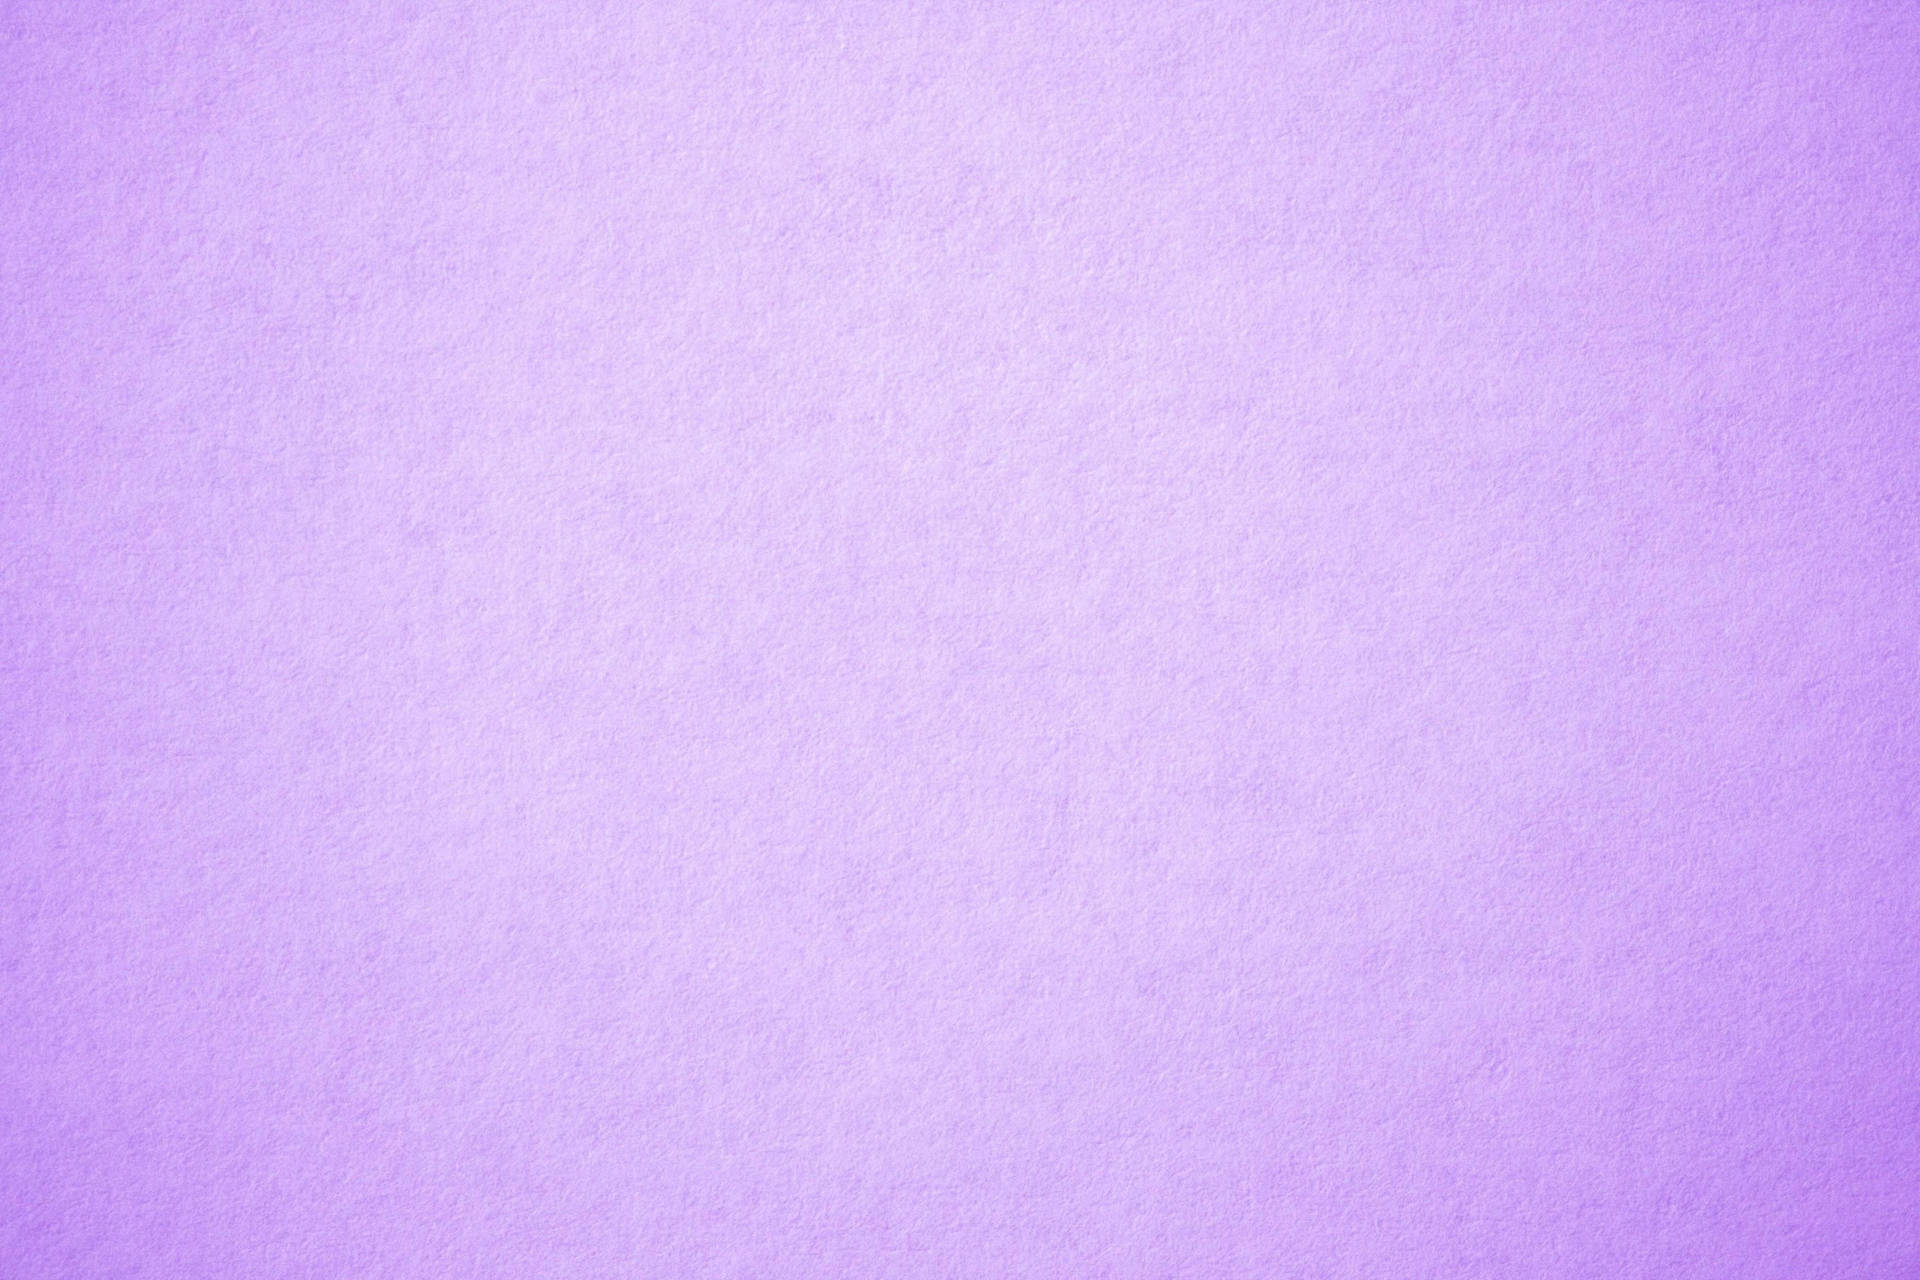 Plain Pastel Purple Tumblr Wallpaper